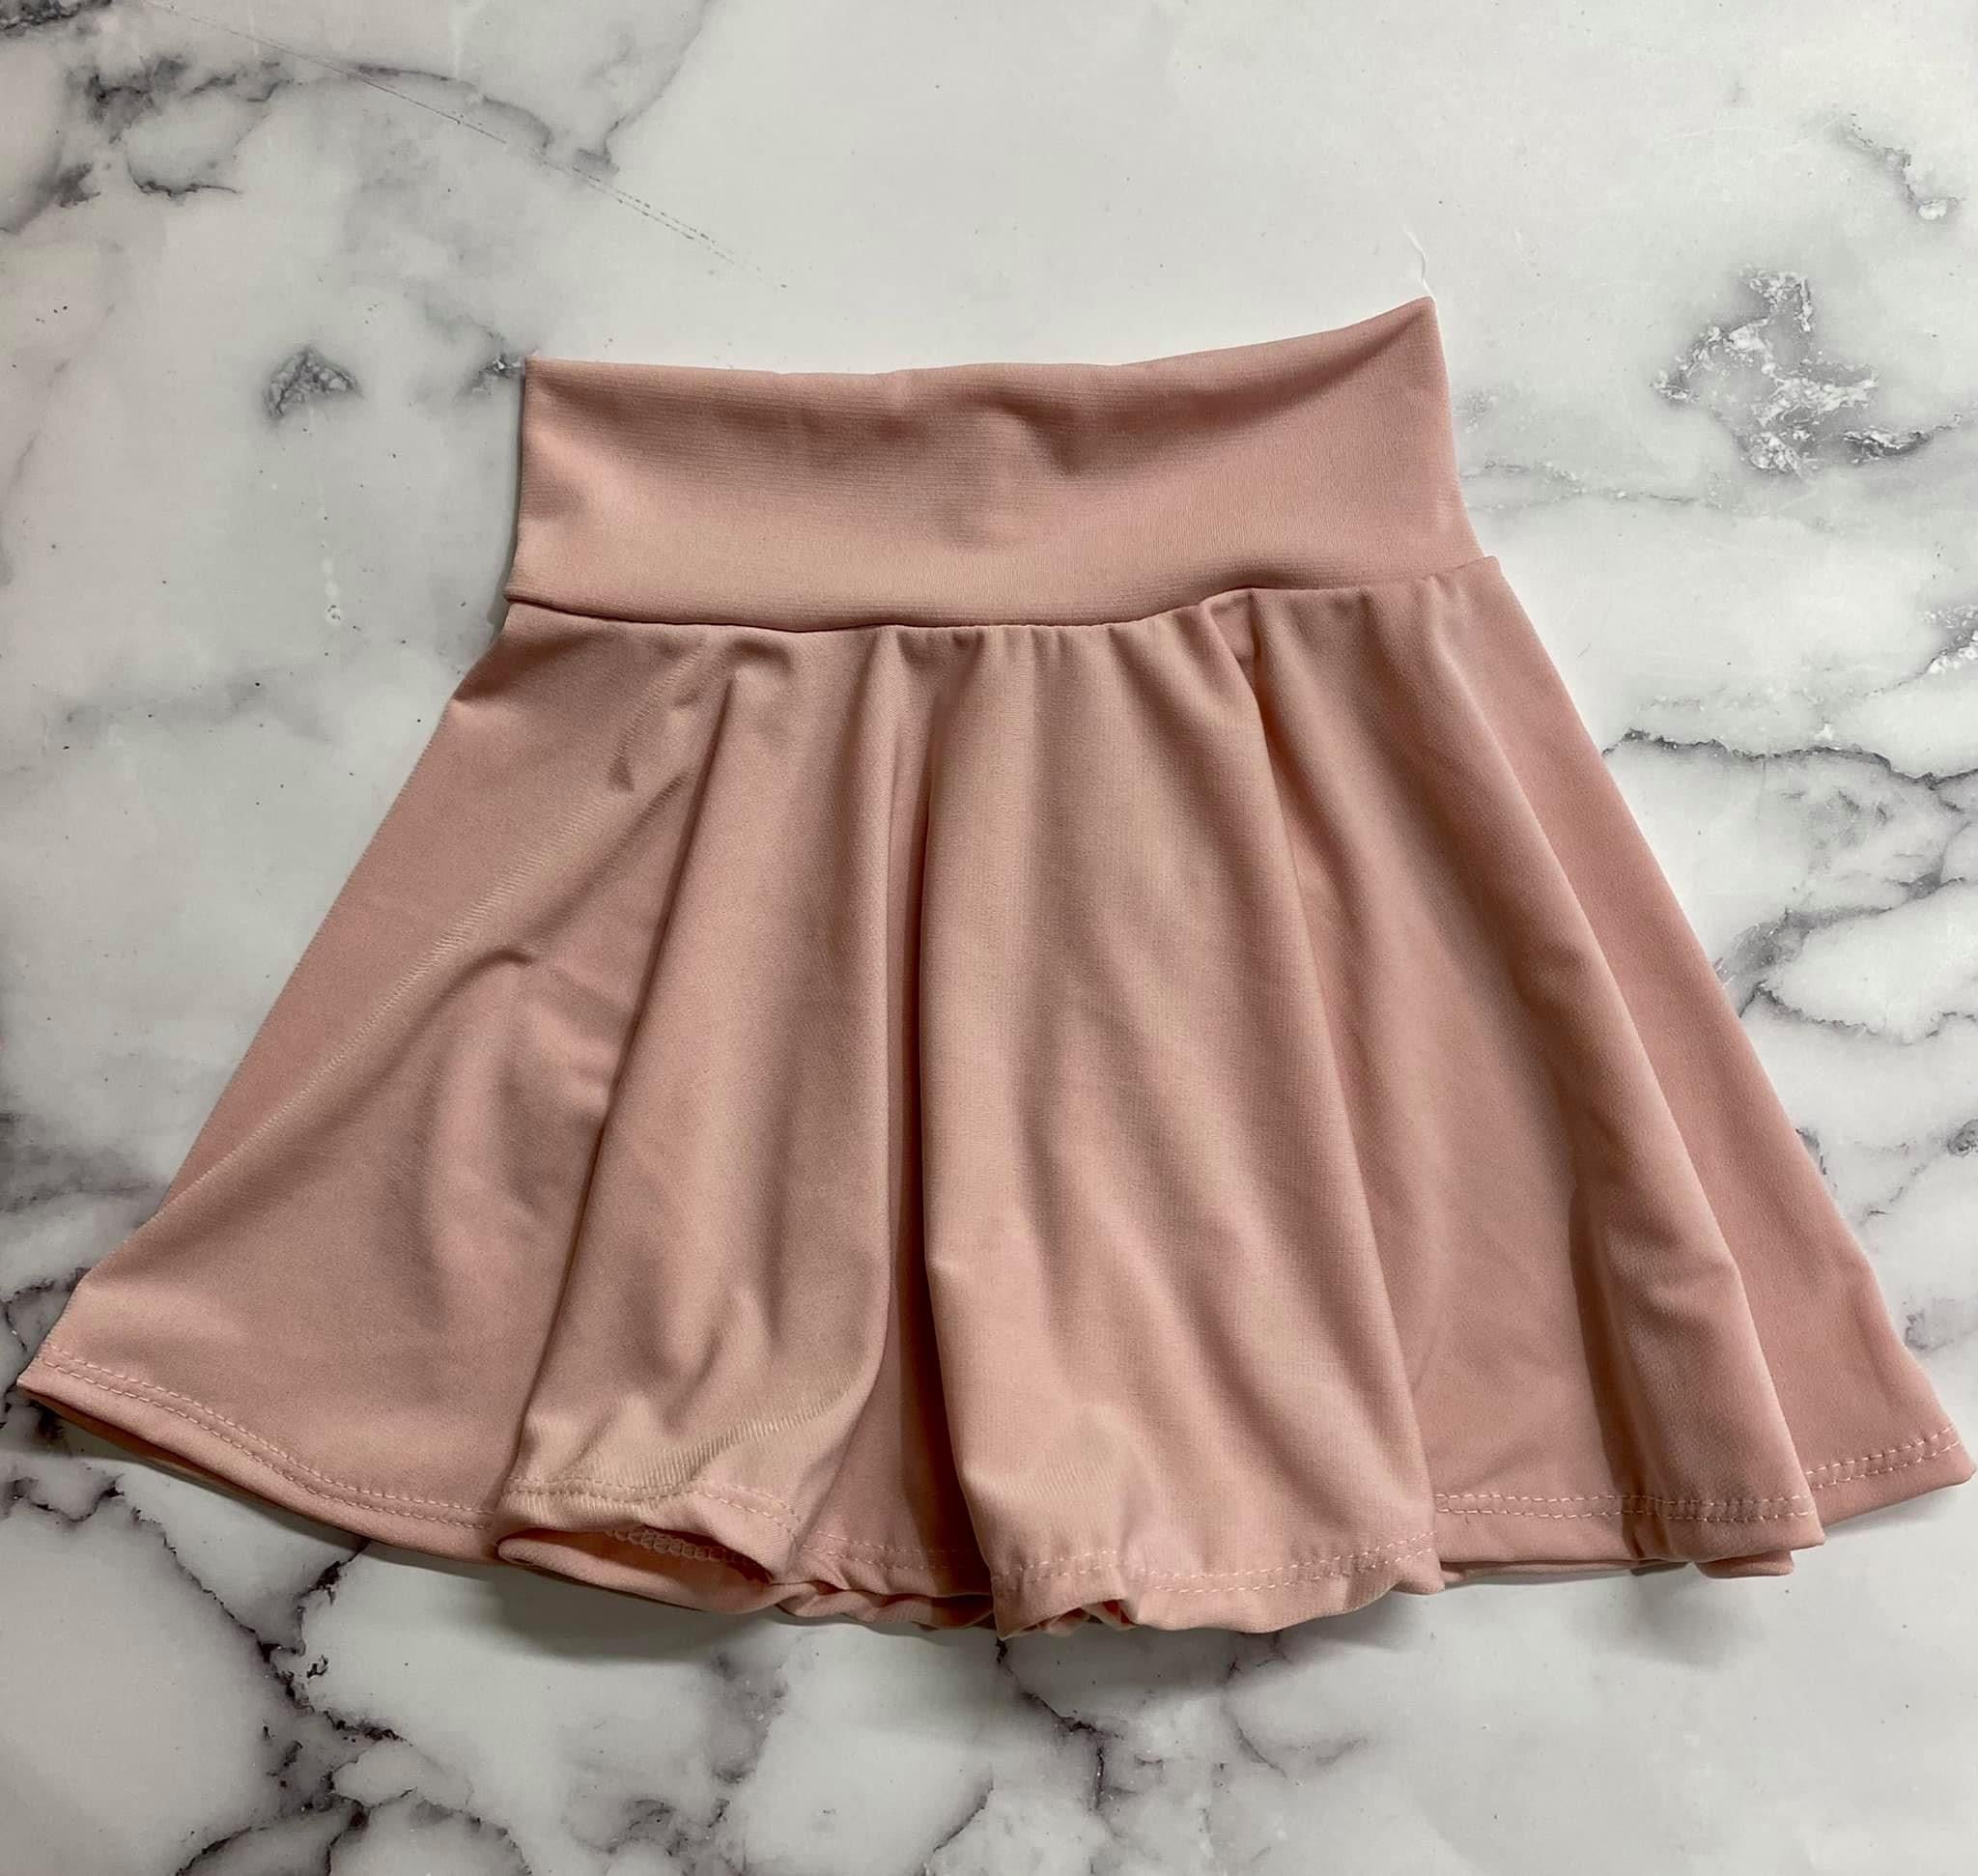 Blush Skirt